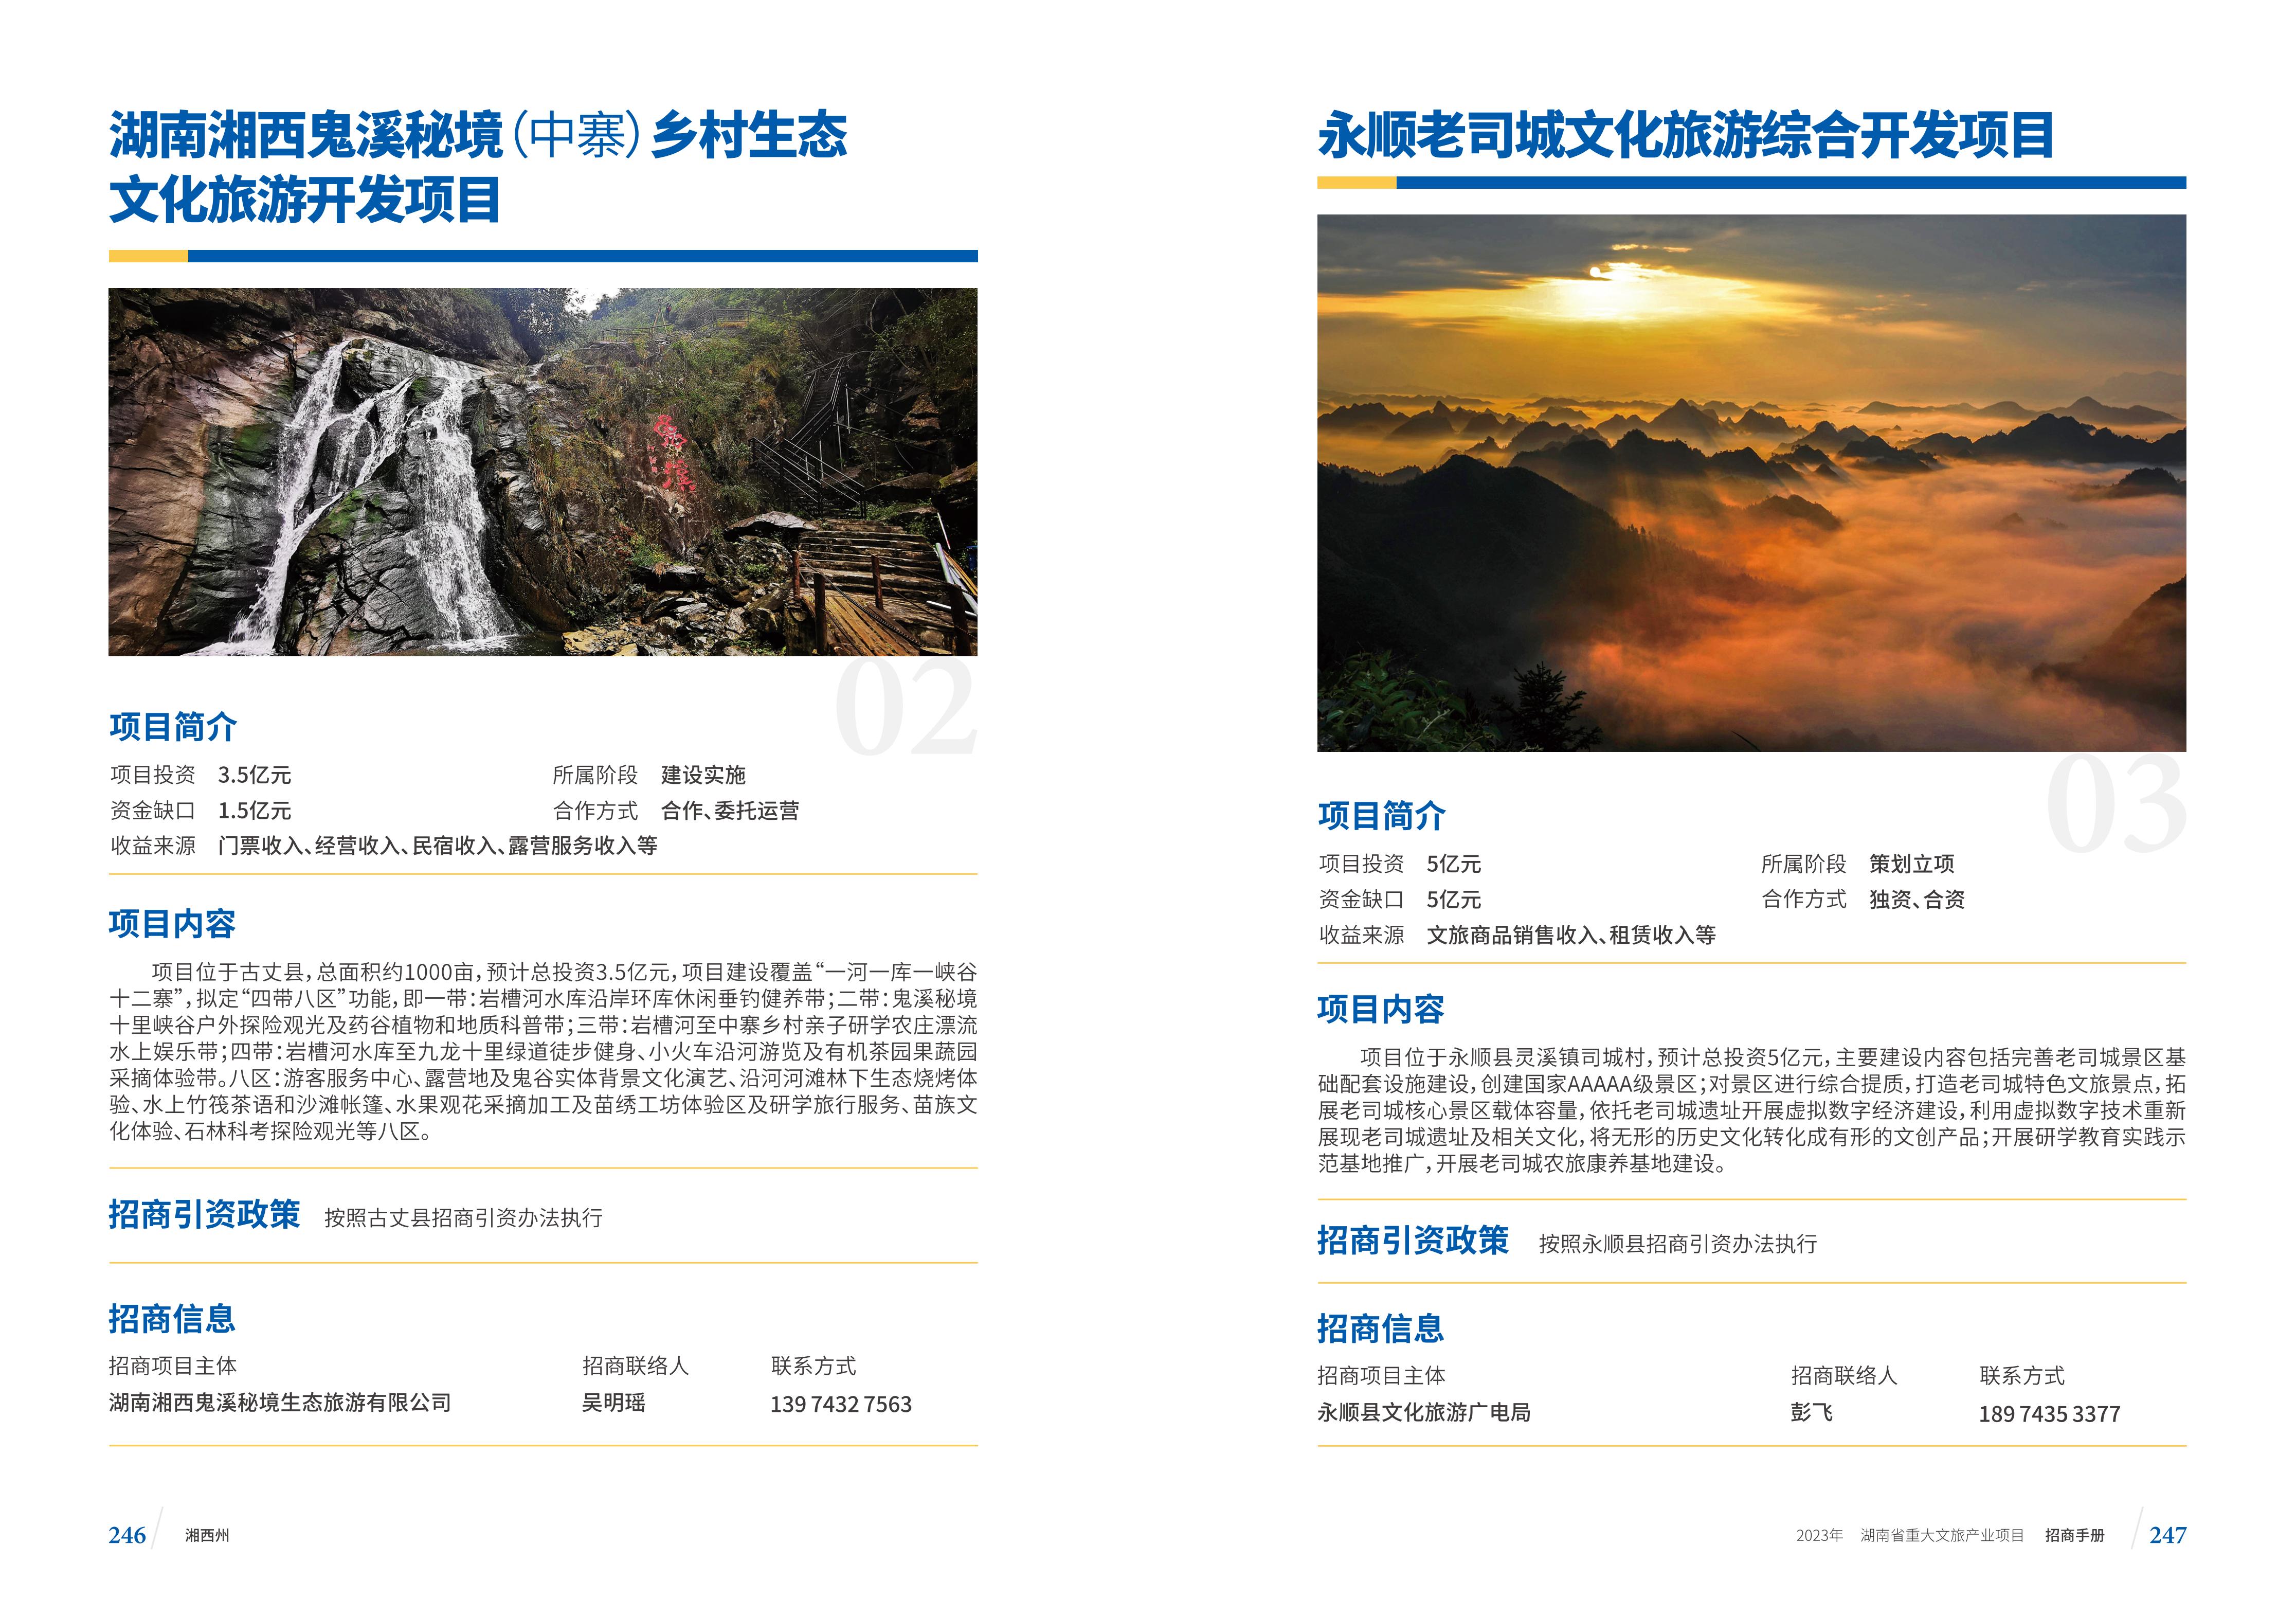 湖南省重大文旅产业项目招手册线上链接版_131.jpg